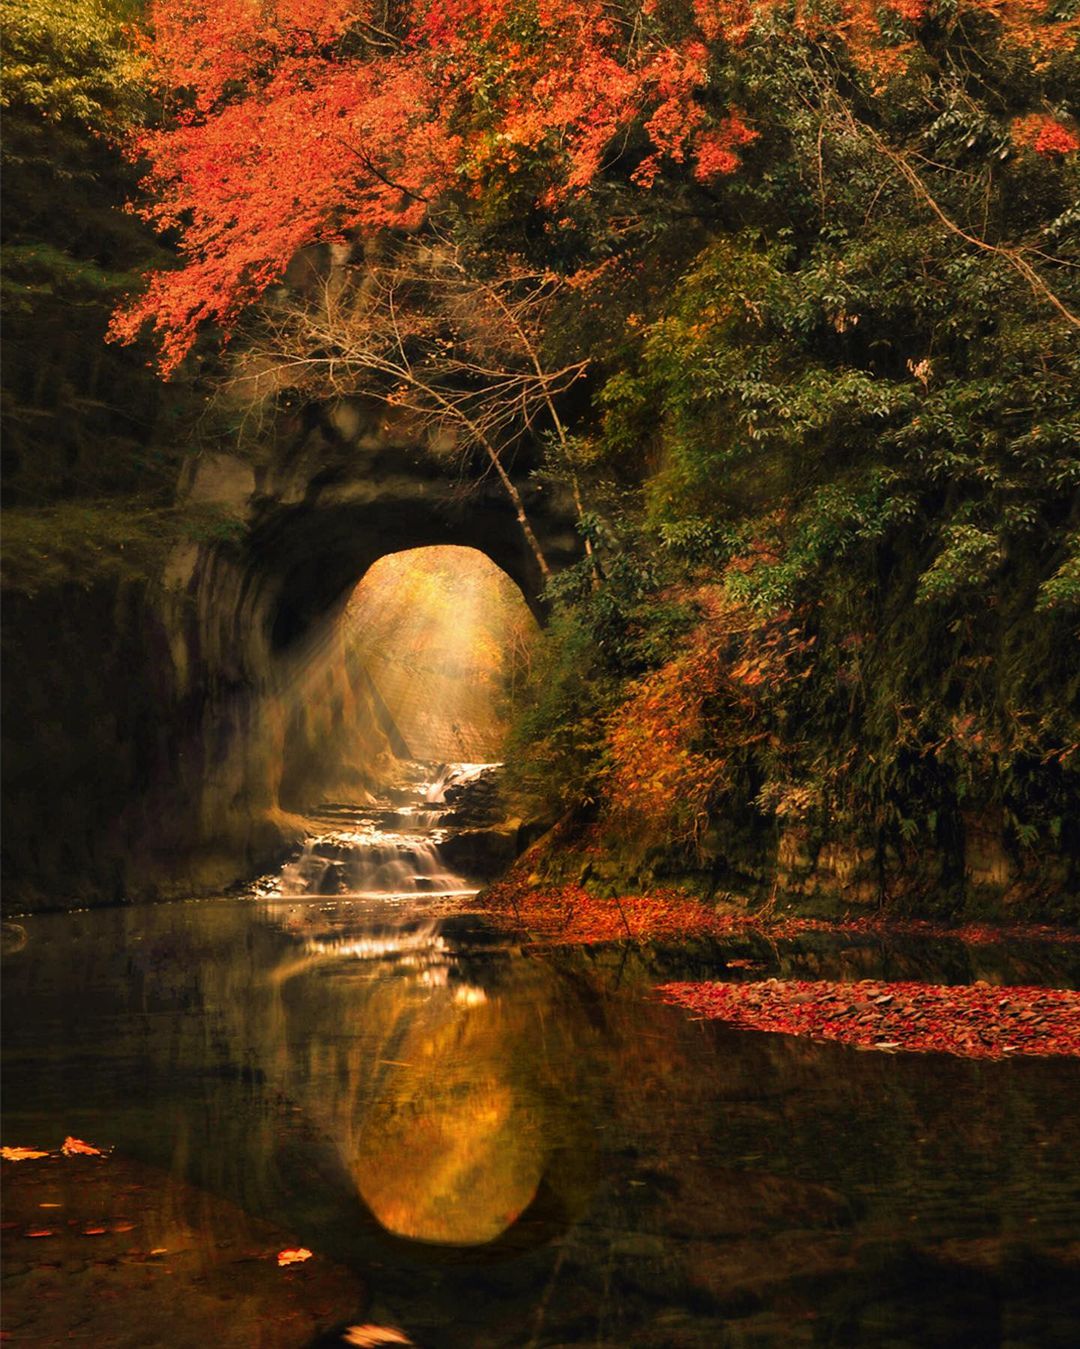 Волшебная японская природа на снимках Макико Самедзимы времена года,тревел-фото,Япония